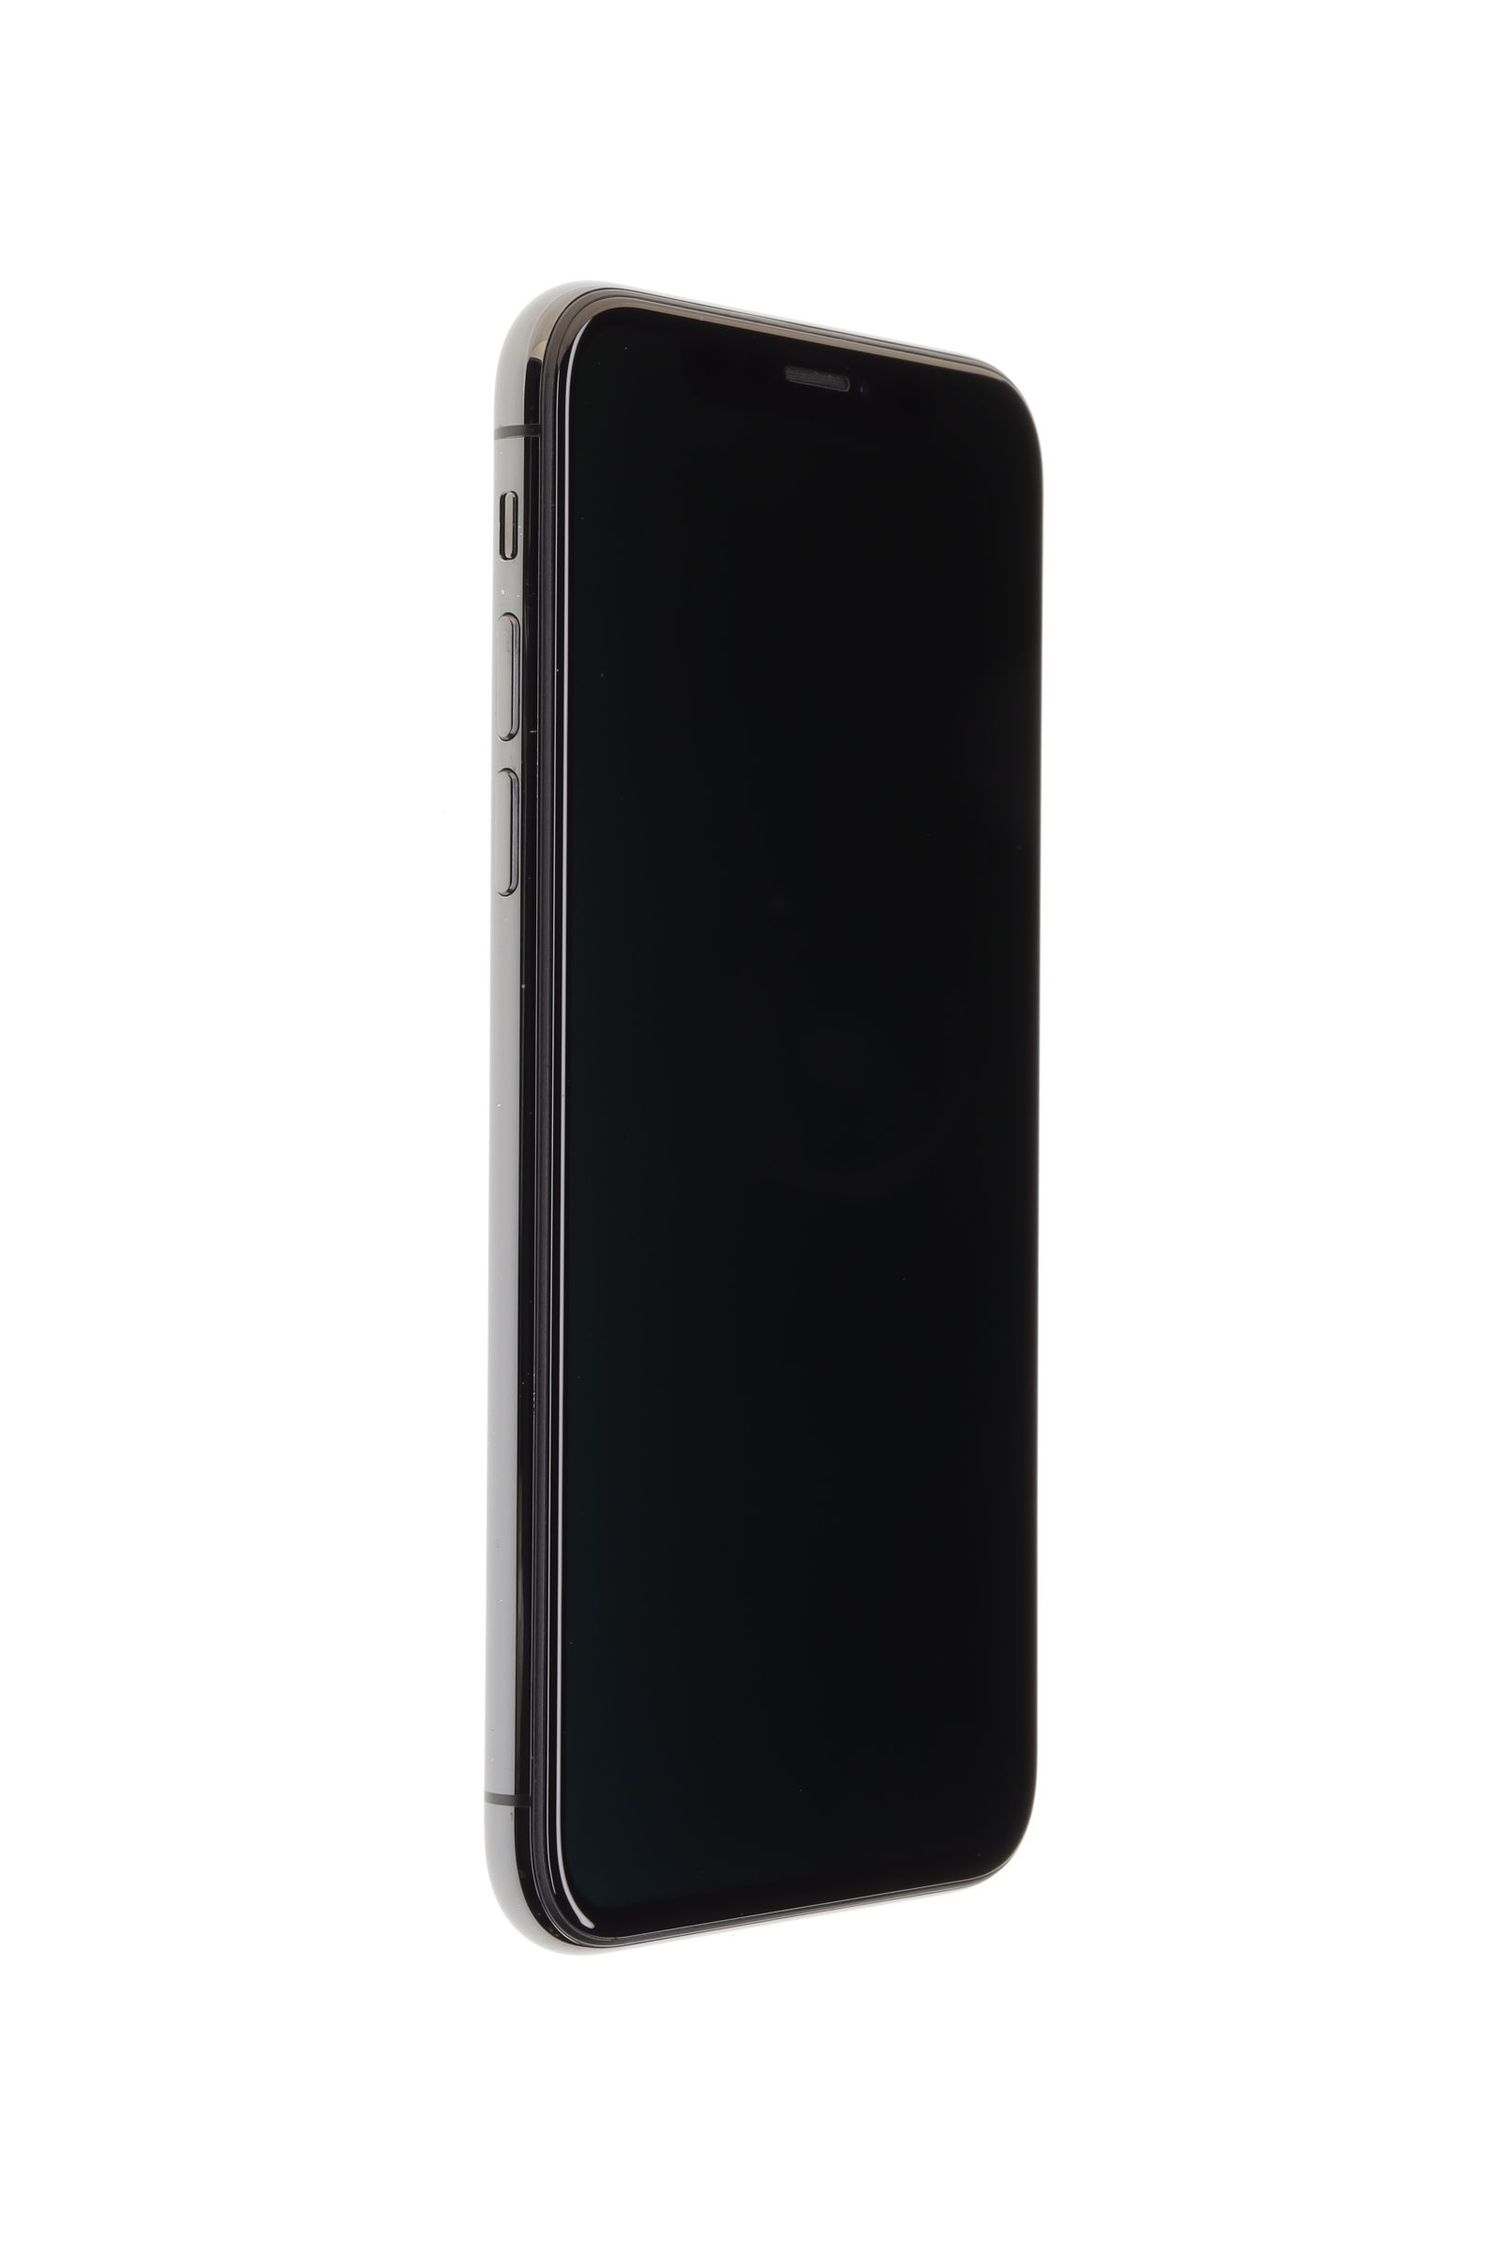 Κινητό τηλέφωνο Apple iPhone X, Space Grey, 64 GB, Excelent